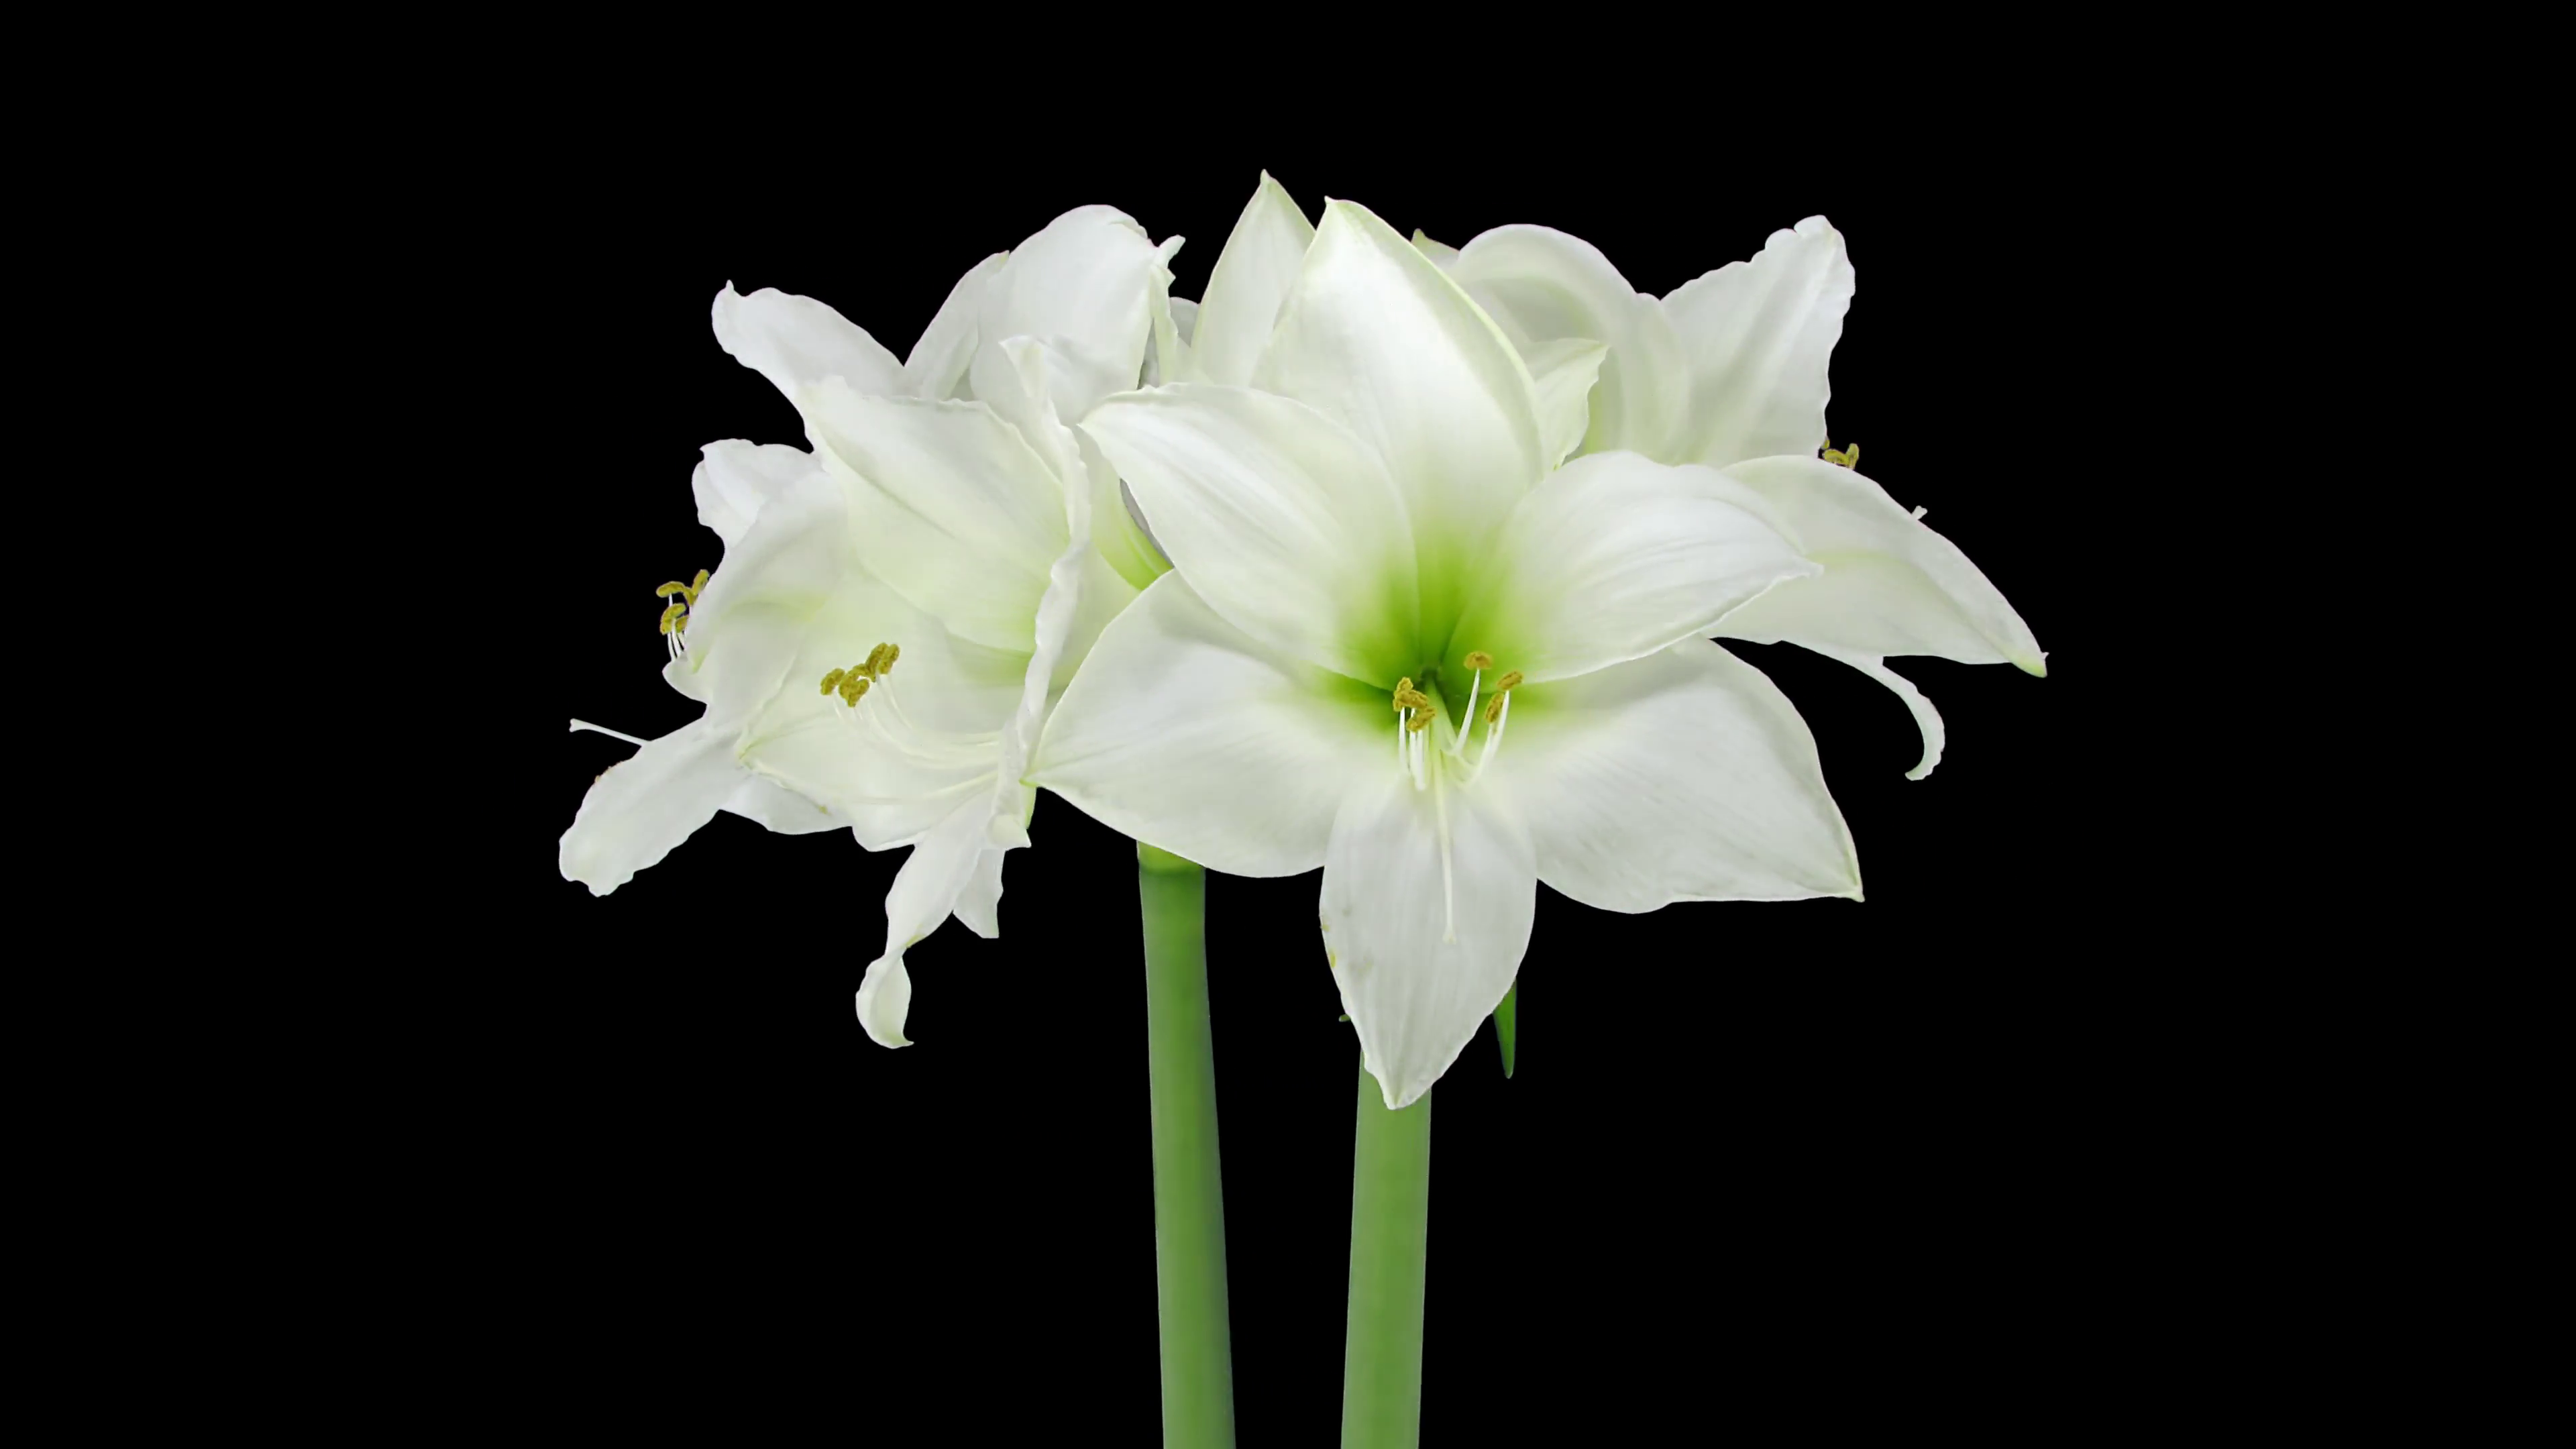 white xmas flowers